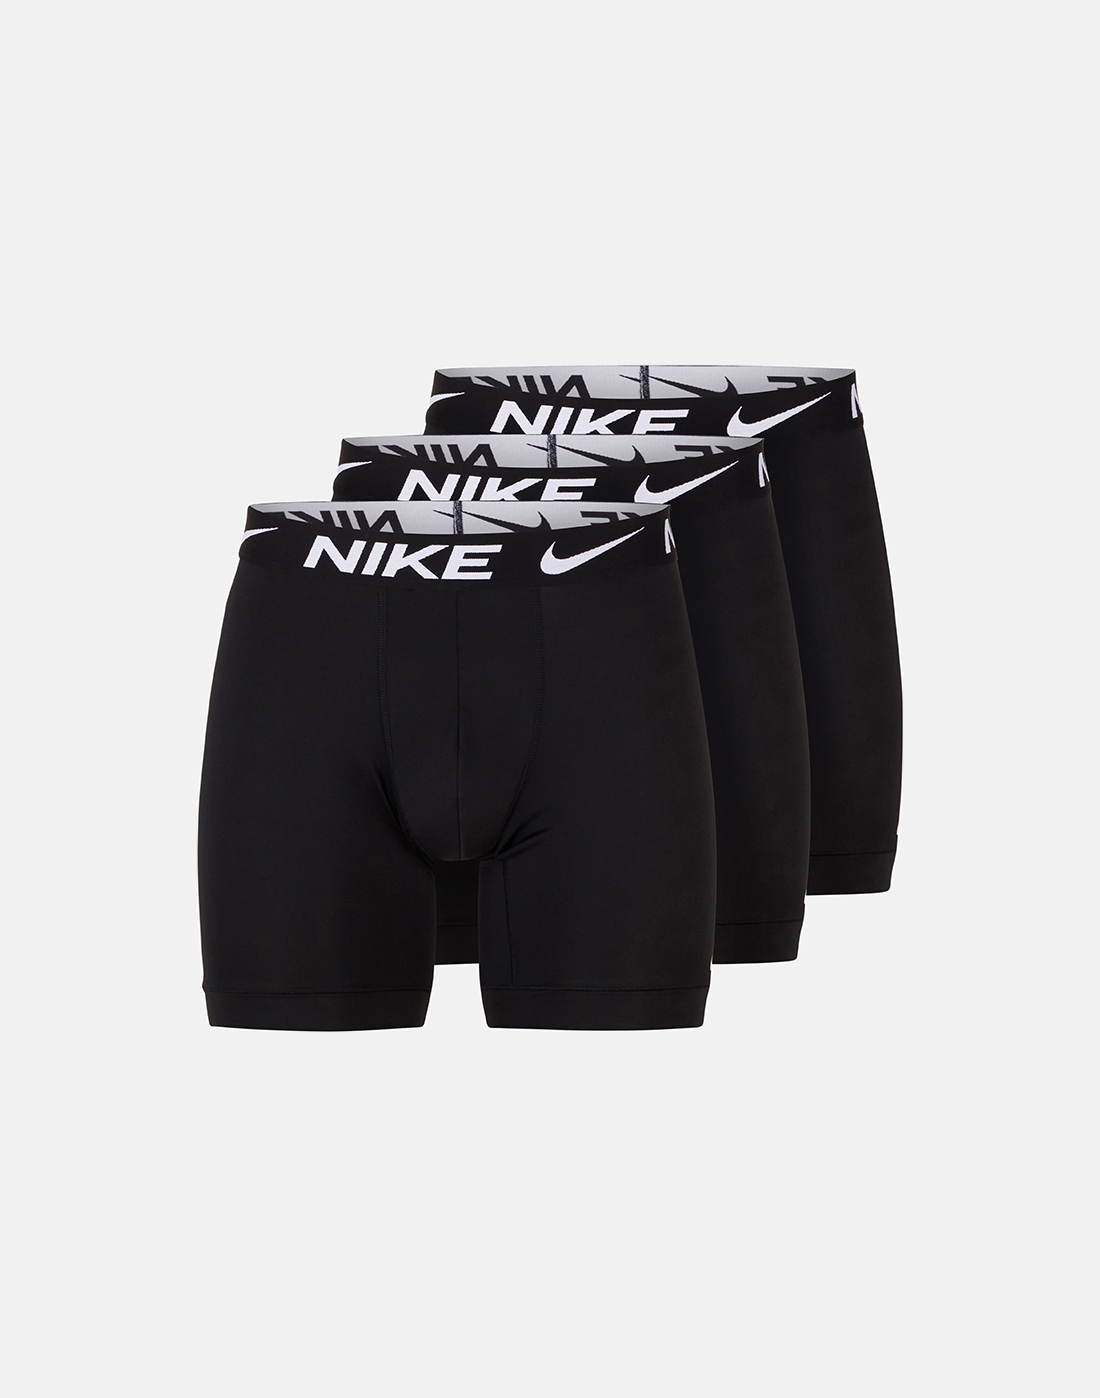 Nike Mens Long 3 Pack Microfibre Boxer Brief - Black